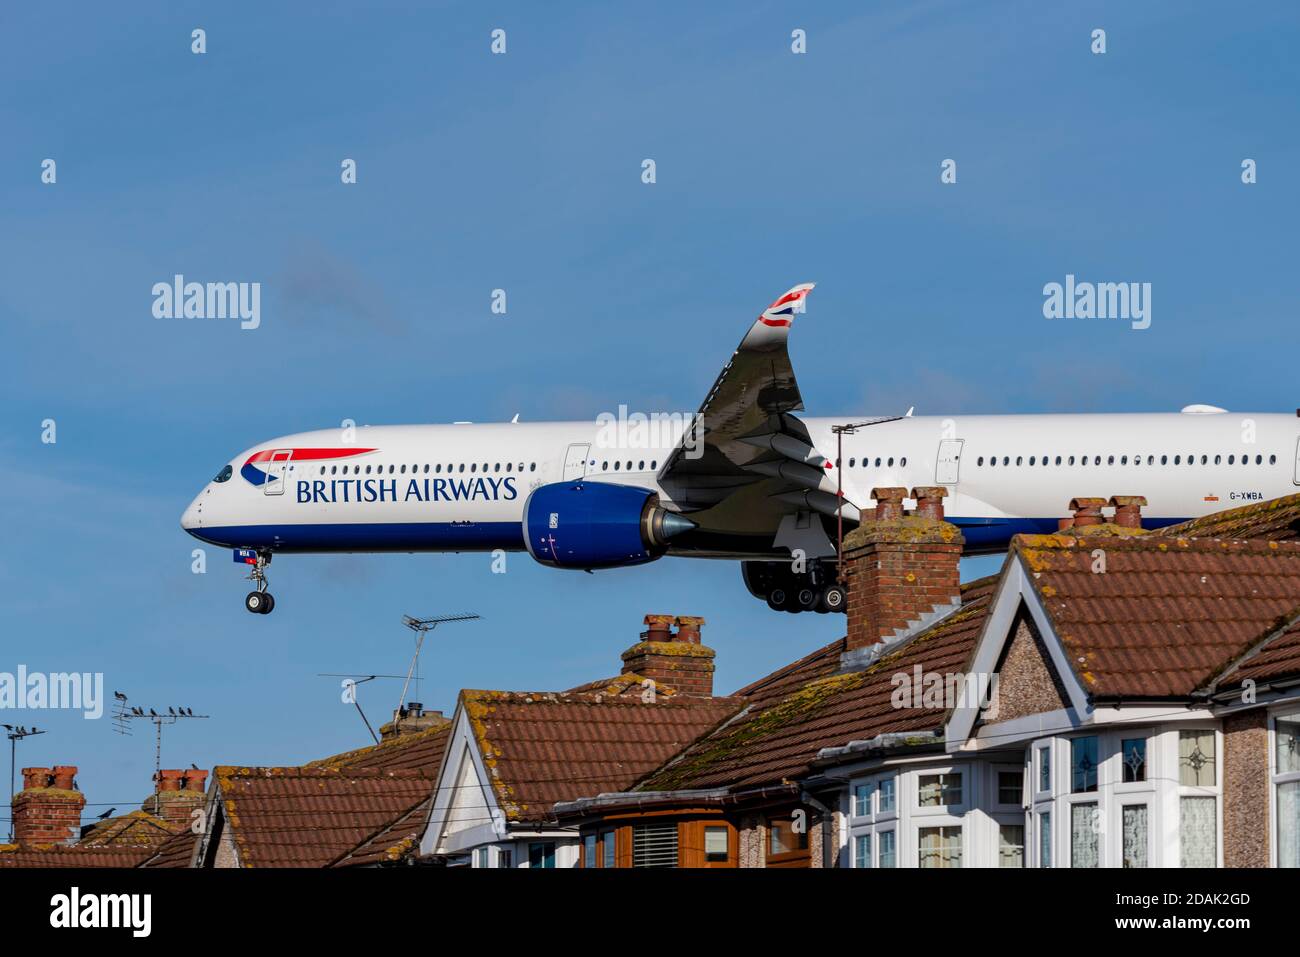 British Airways-Jet-Flugzeug auf dem Anflug auf den Flughafen London Heathrow, Großbritannien, über Dächer von Häusern in der Nähe des Flughafens zu landen. Eigenschaften unter flightpath Stockfoto